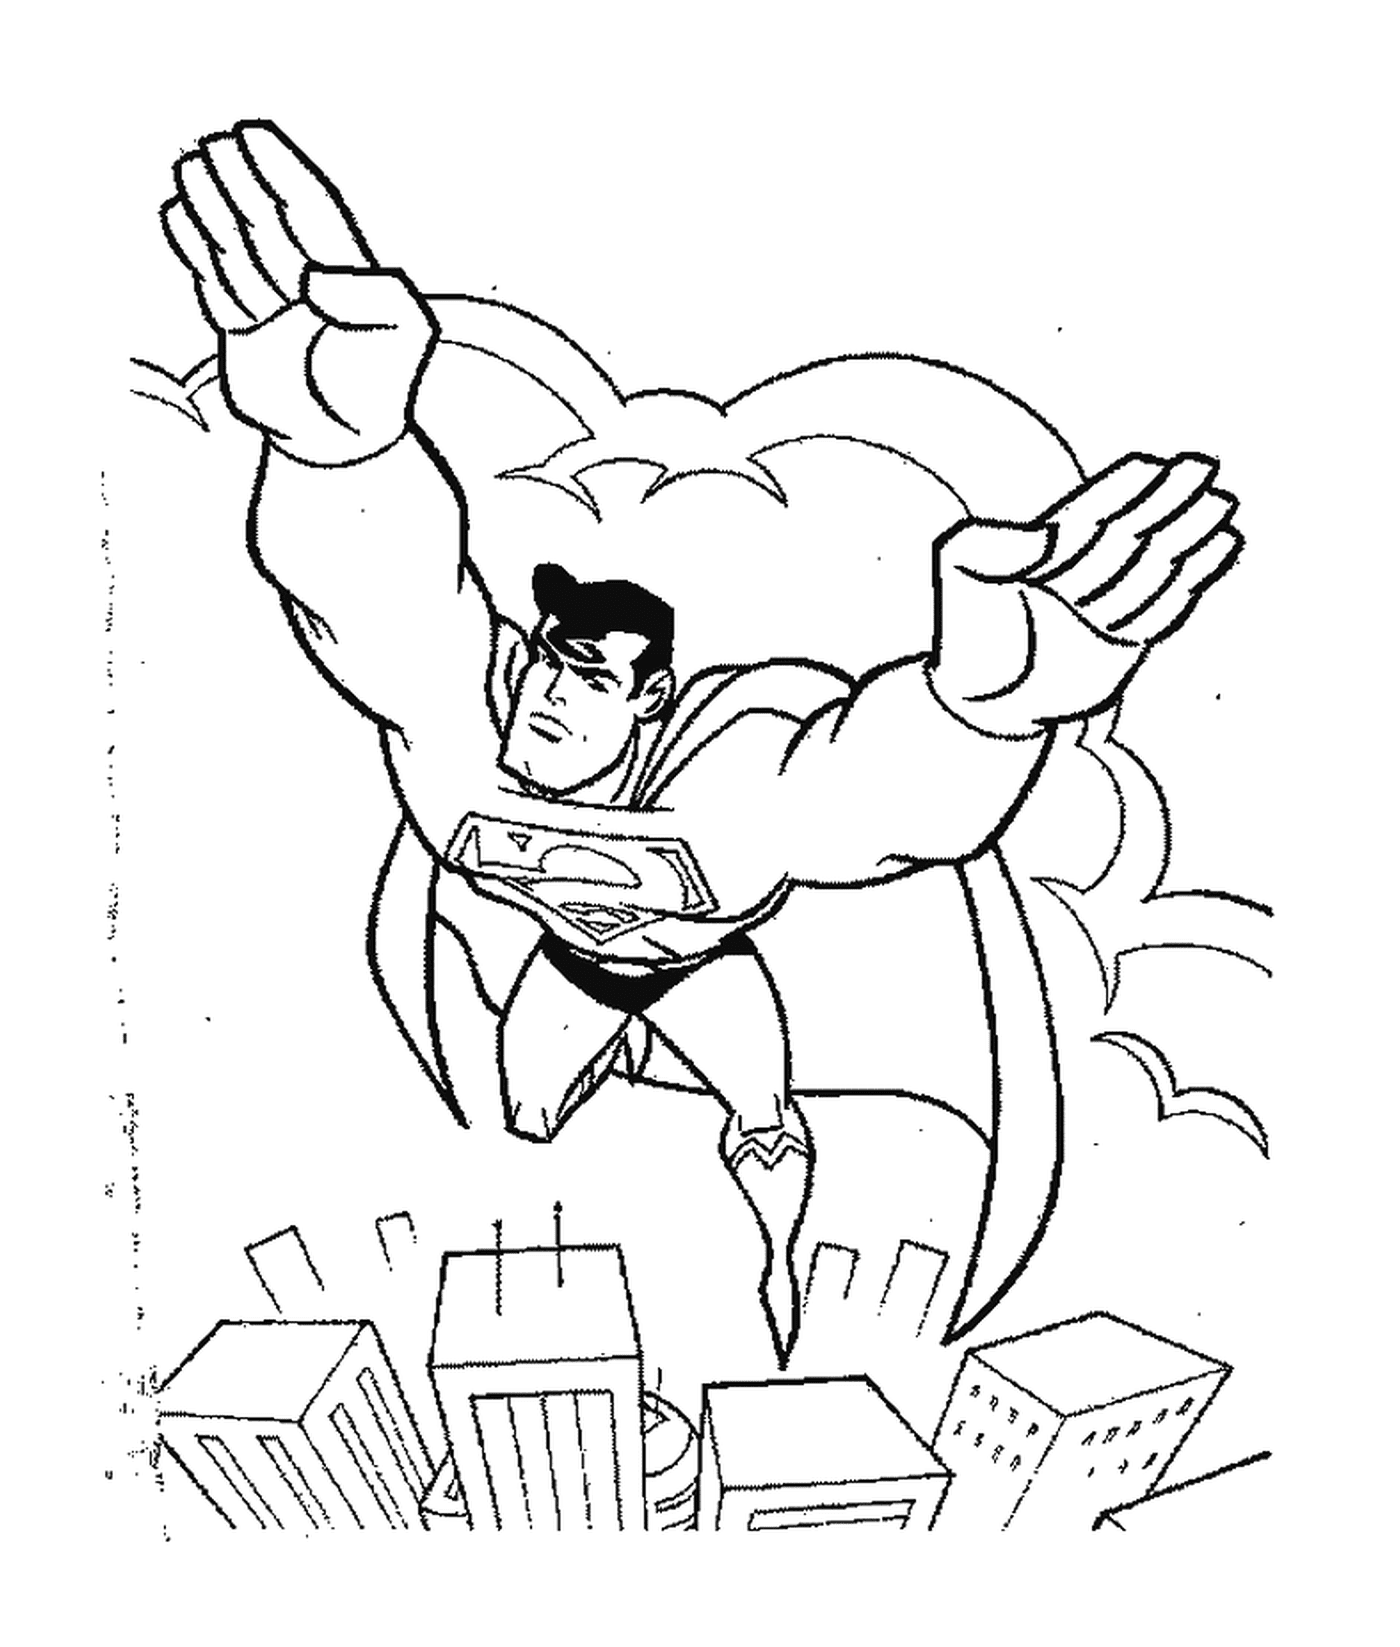  Superman vuela sobre los rascacielos 